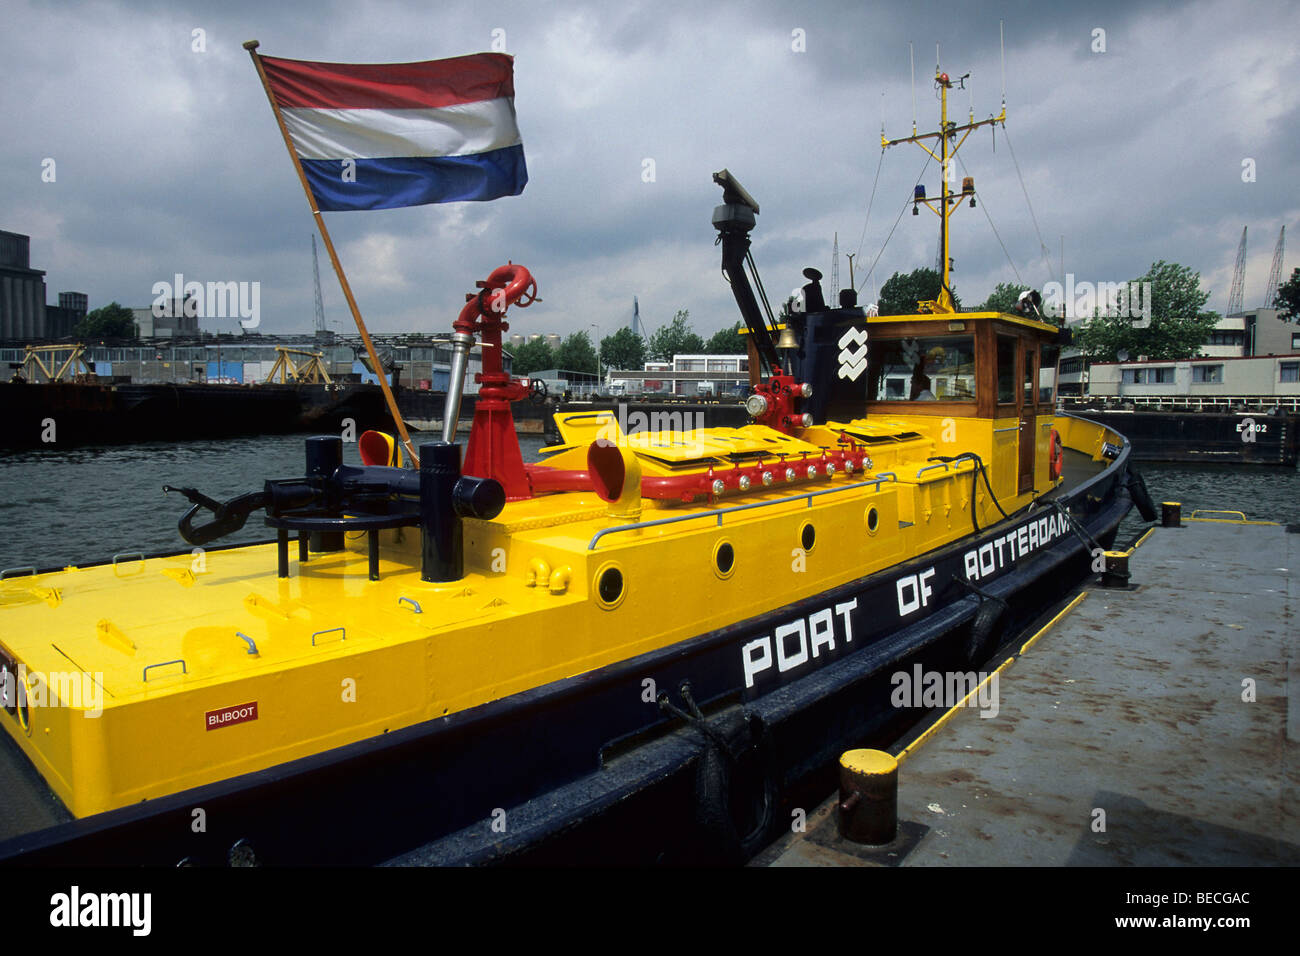 Drapeau national contre ciel gris, jaune bateau port de Rotterdam Harbour, Port de Rotterdam, Pays-Bas, province de Hollande du Sud Banque D'Images